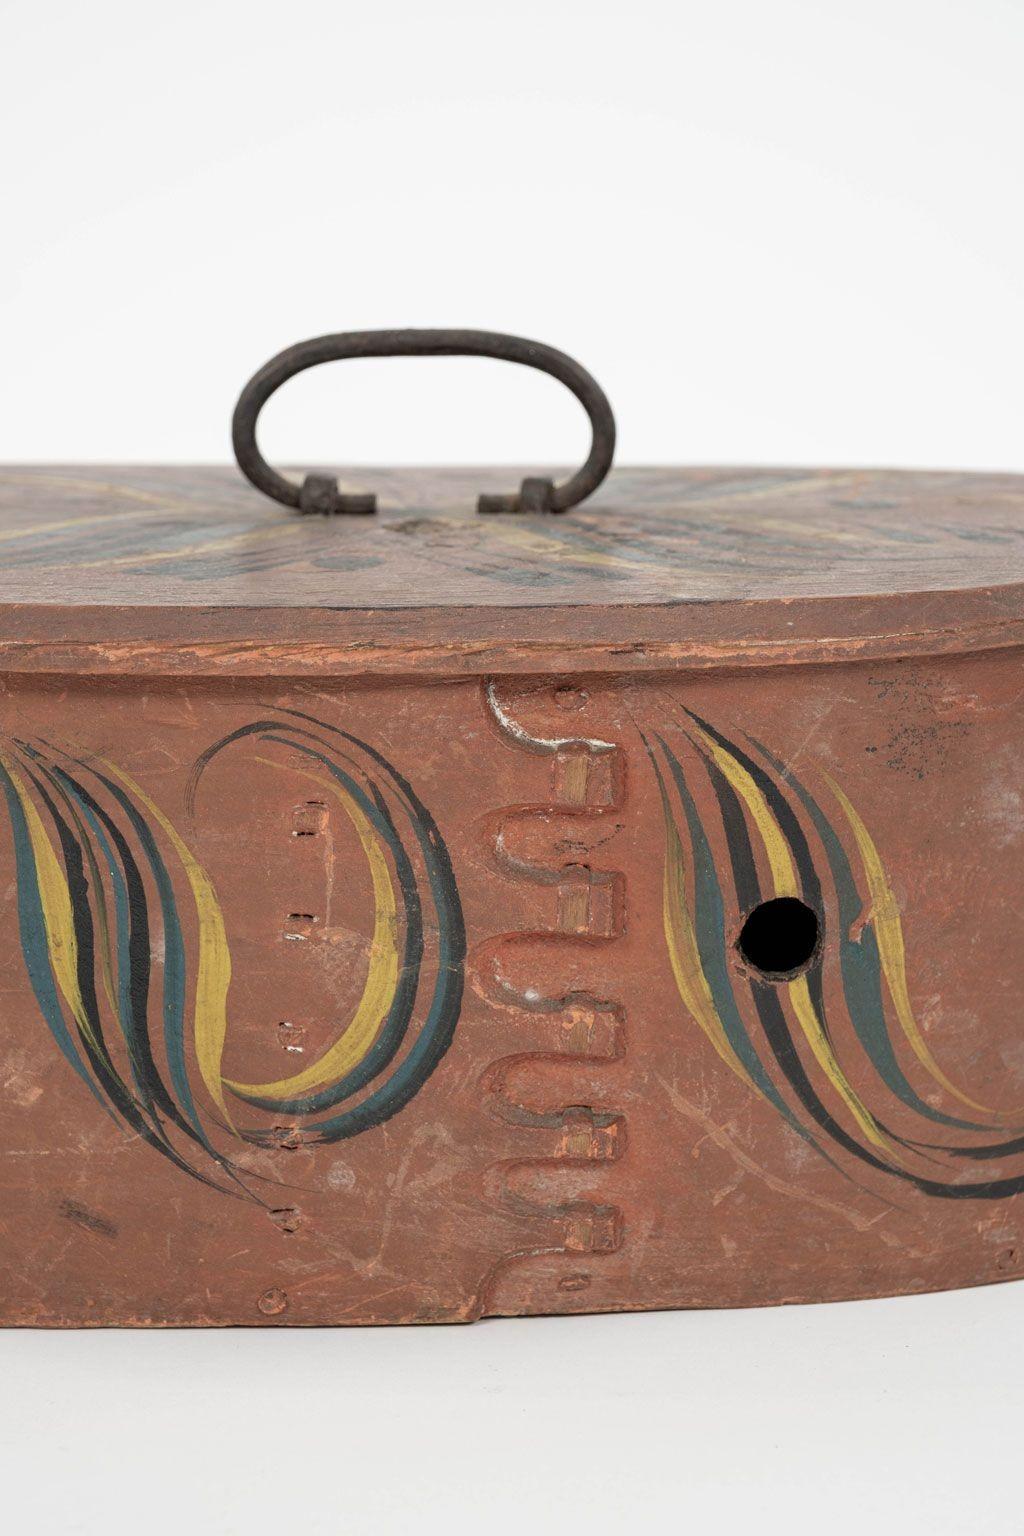 Skandinavische Tine oder Svepask, bemalter ovaler Kasten aus Bugholz, ca. Ende des 19. Jahrhunderts, wahrscheinlich aus der Region Sogn og Fjordane. Die Box besteht aus dünnen Schichten dampfgebogenen Holzes, die mit einem Stück Birkenwurzel